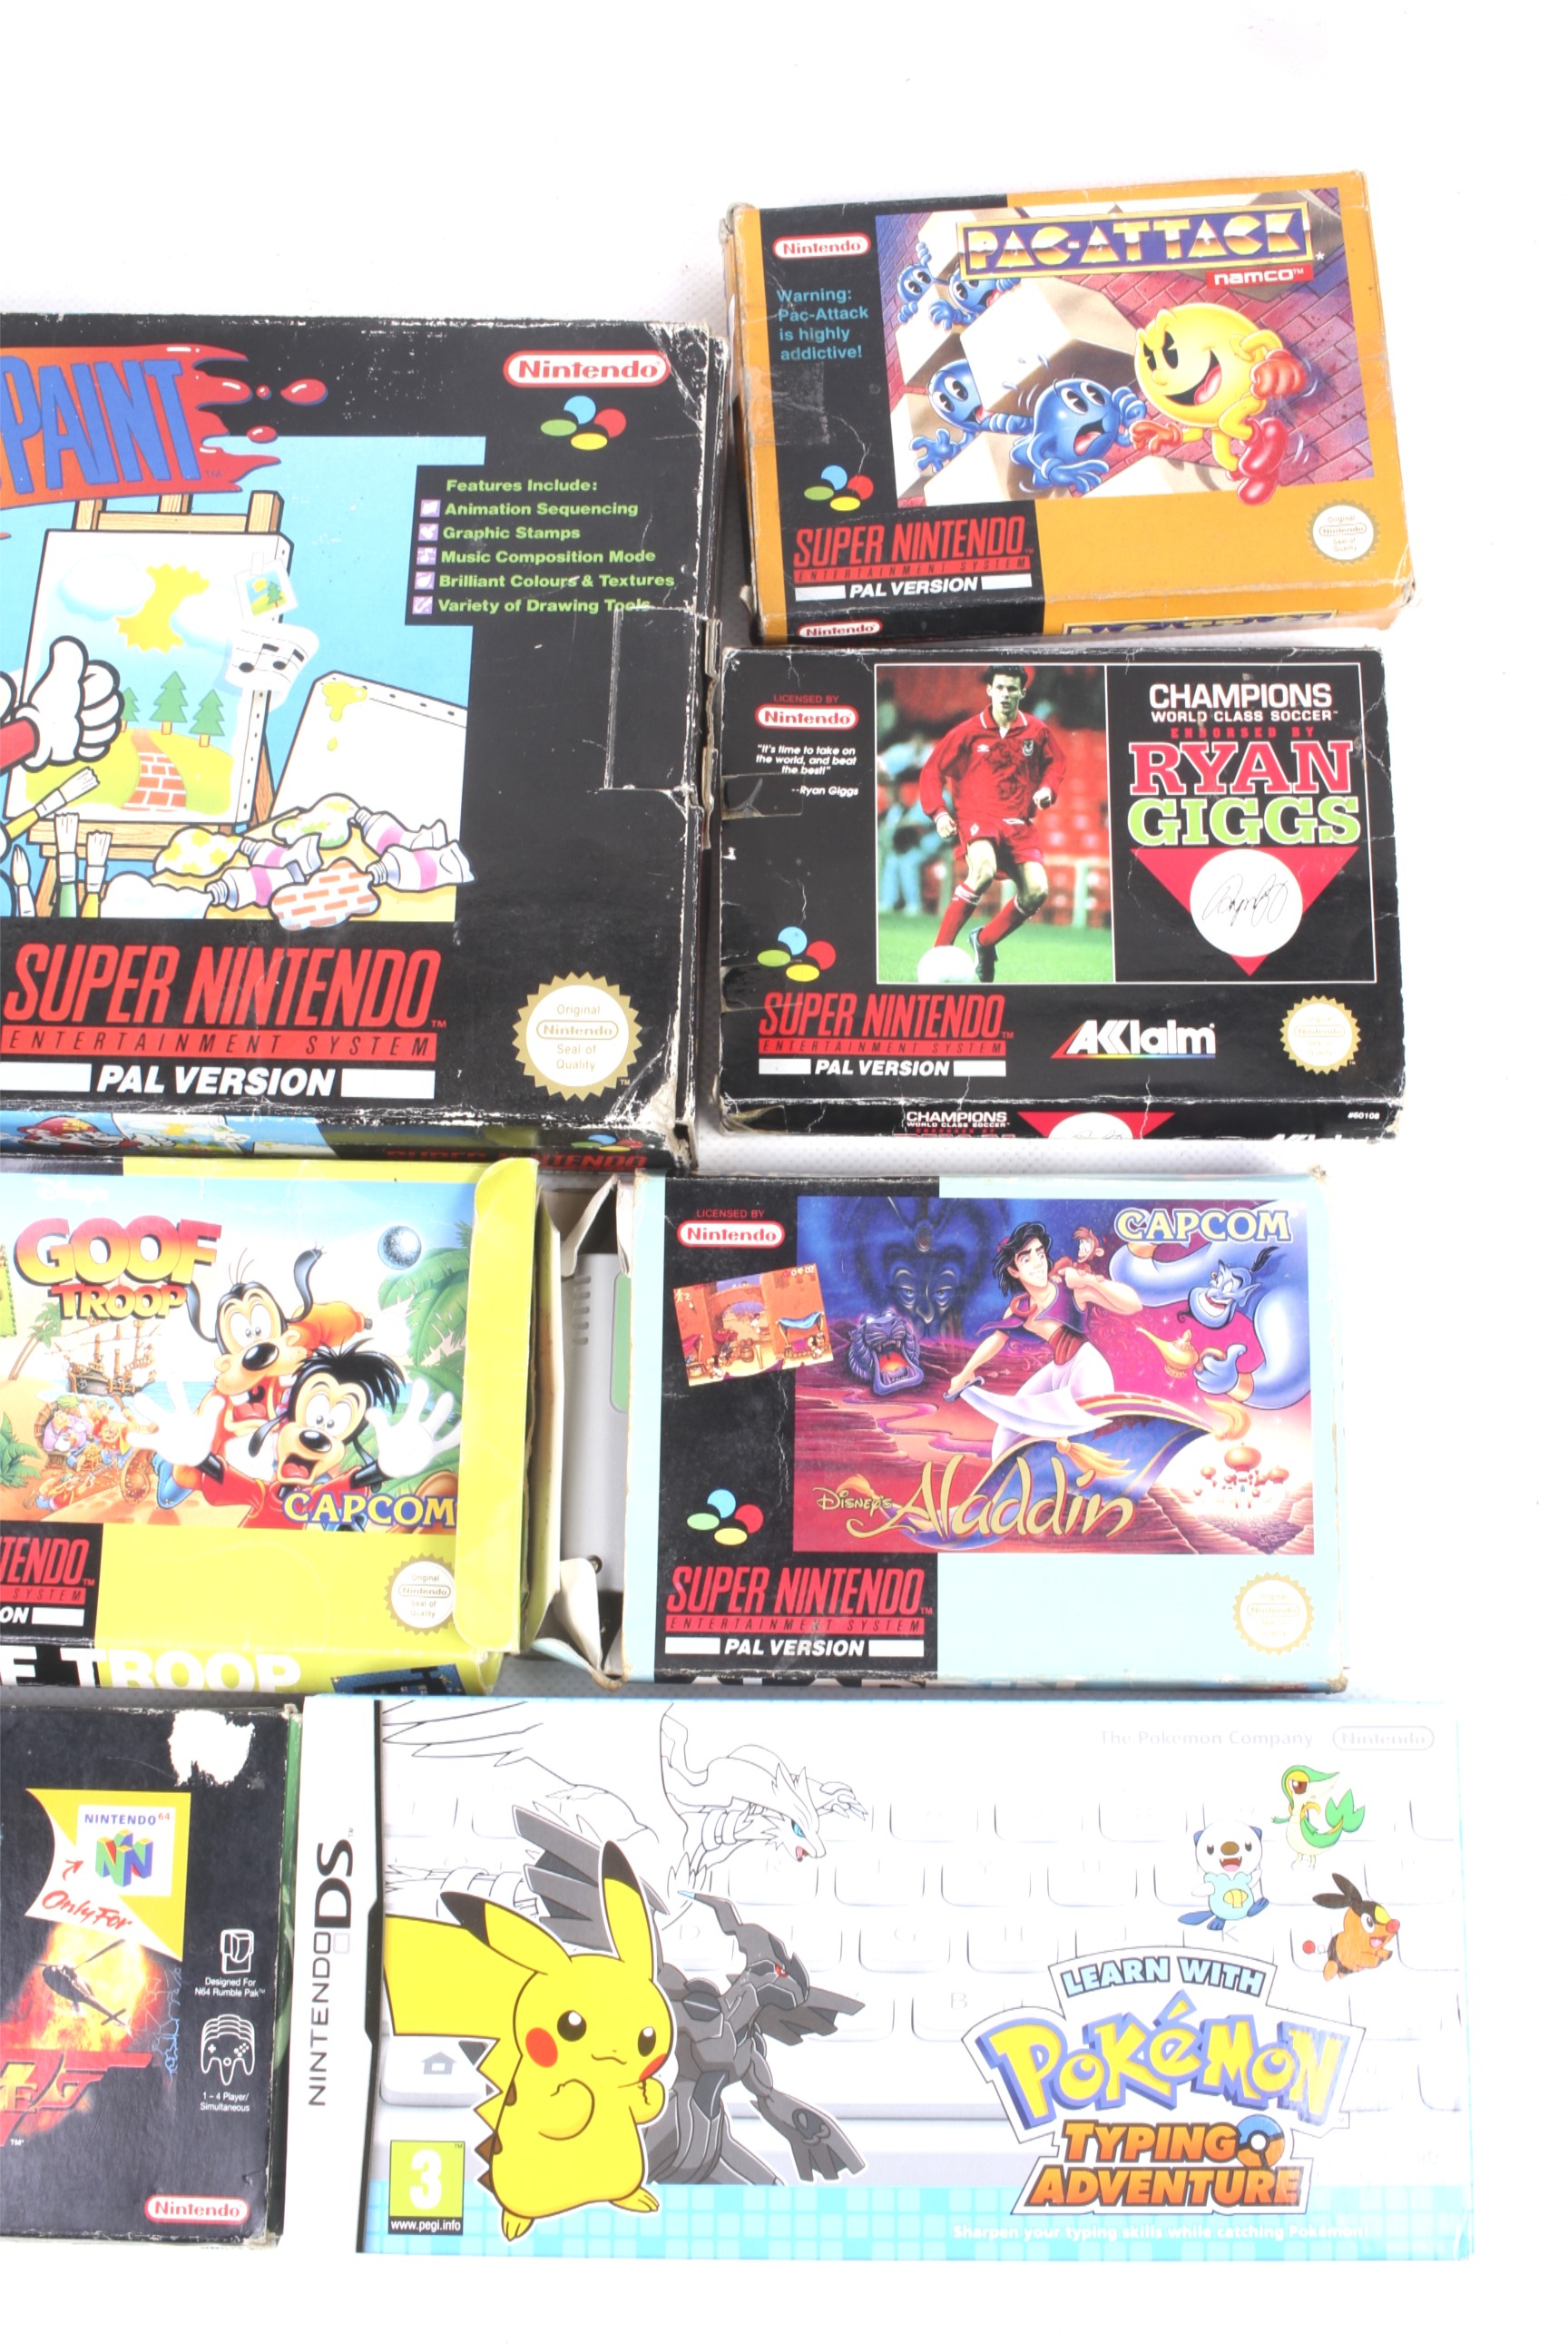 A Super Nintendo Pal Version games console plus games. - Bild 3 aus 3